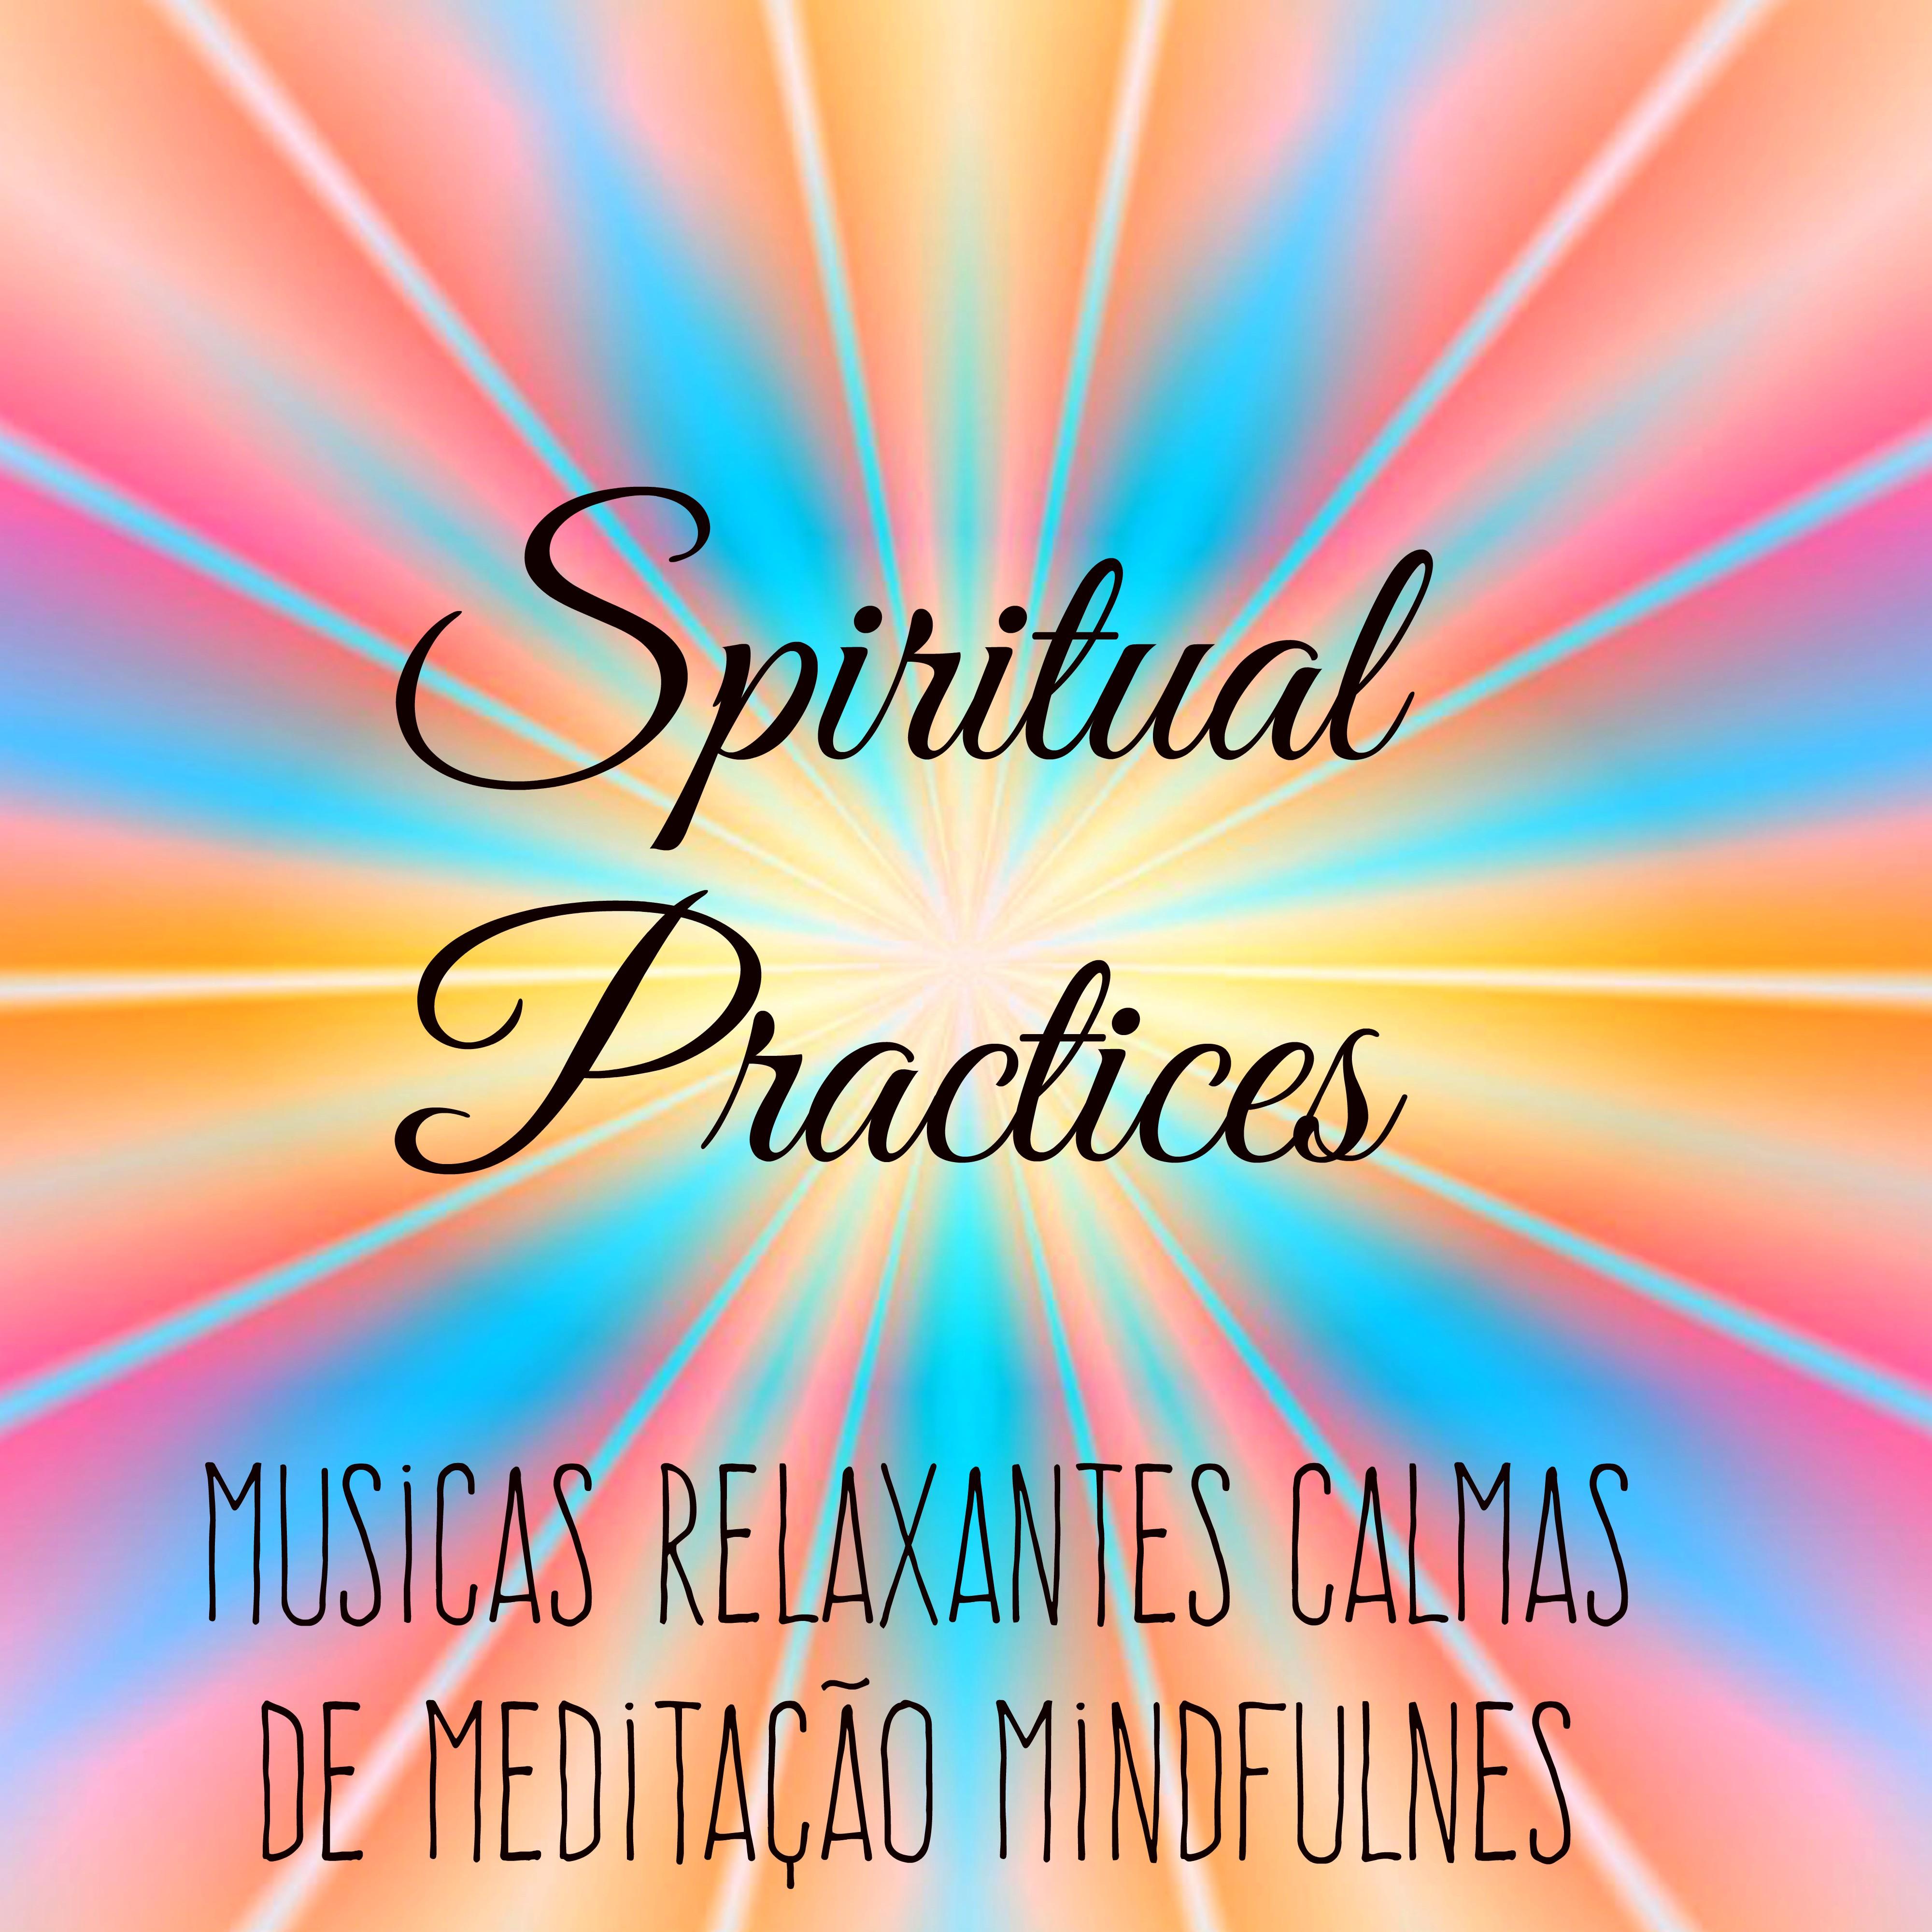 Spiritual Practices  Musicas Relaxantes Calmas de Medita o Mindfulness para Aprender A Meditar Treinamento da Mente e Saude Bem Estar